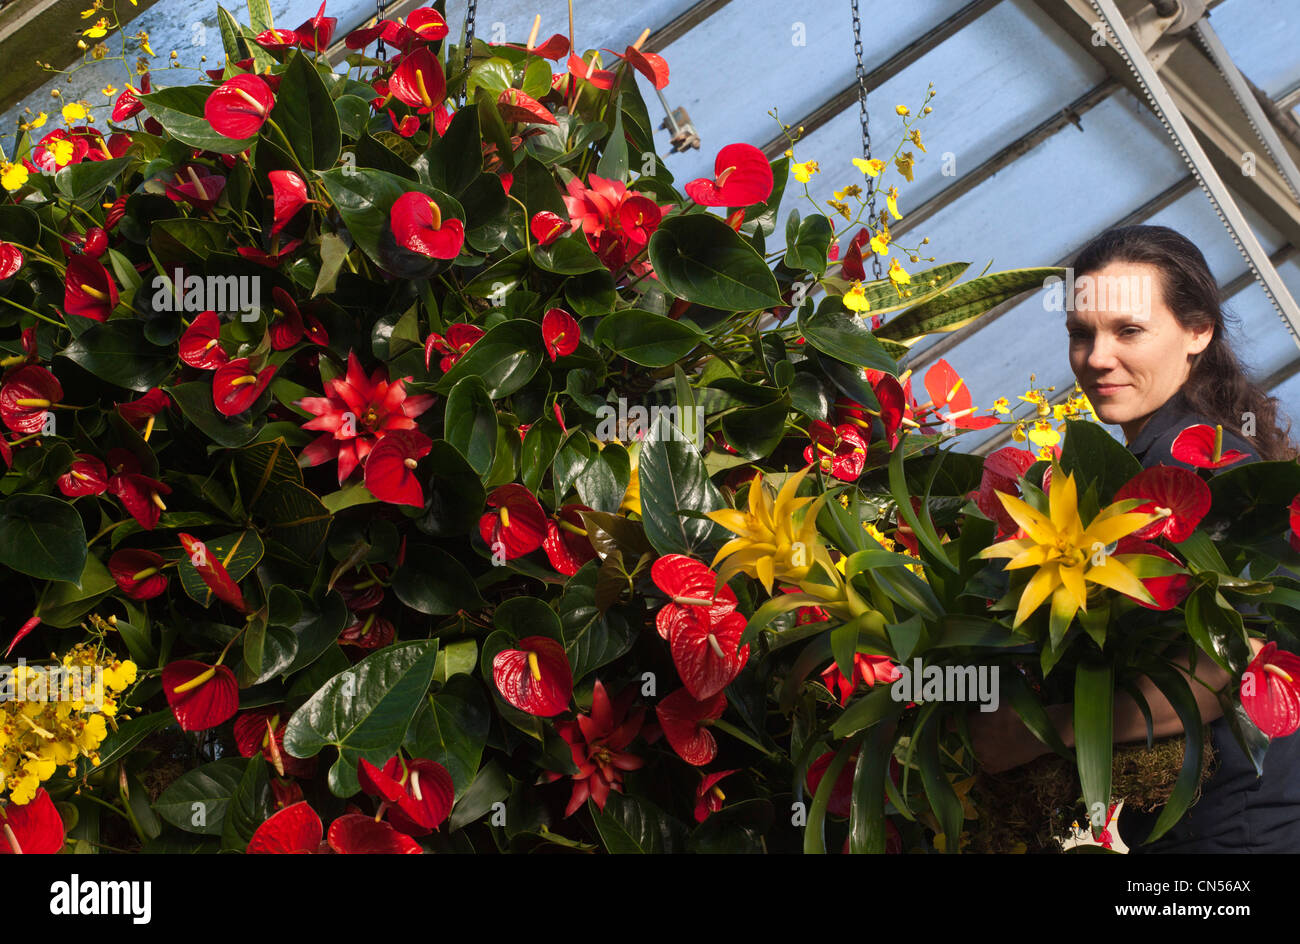 Royal Botanic Gardens in Kew feiern das tropische Extravaganza Festival 2012 mit mehr als 6.500 tropischen Pflanzen. Stockfoto